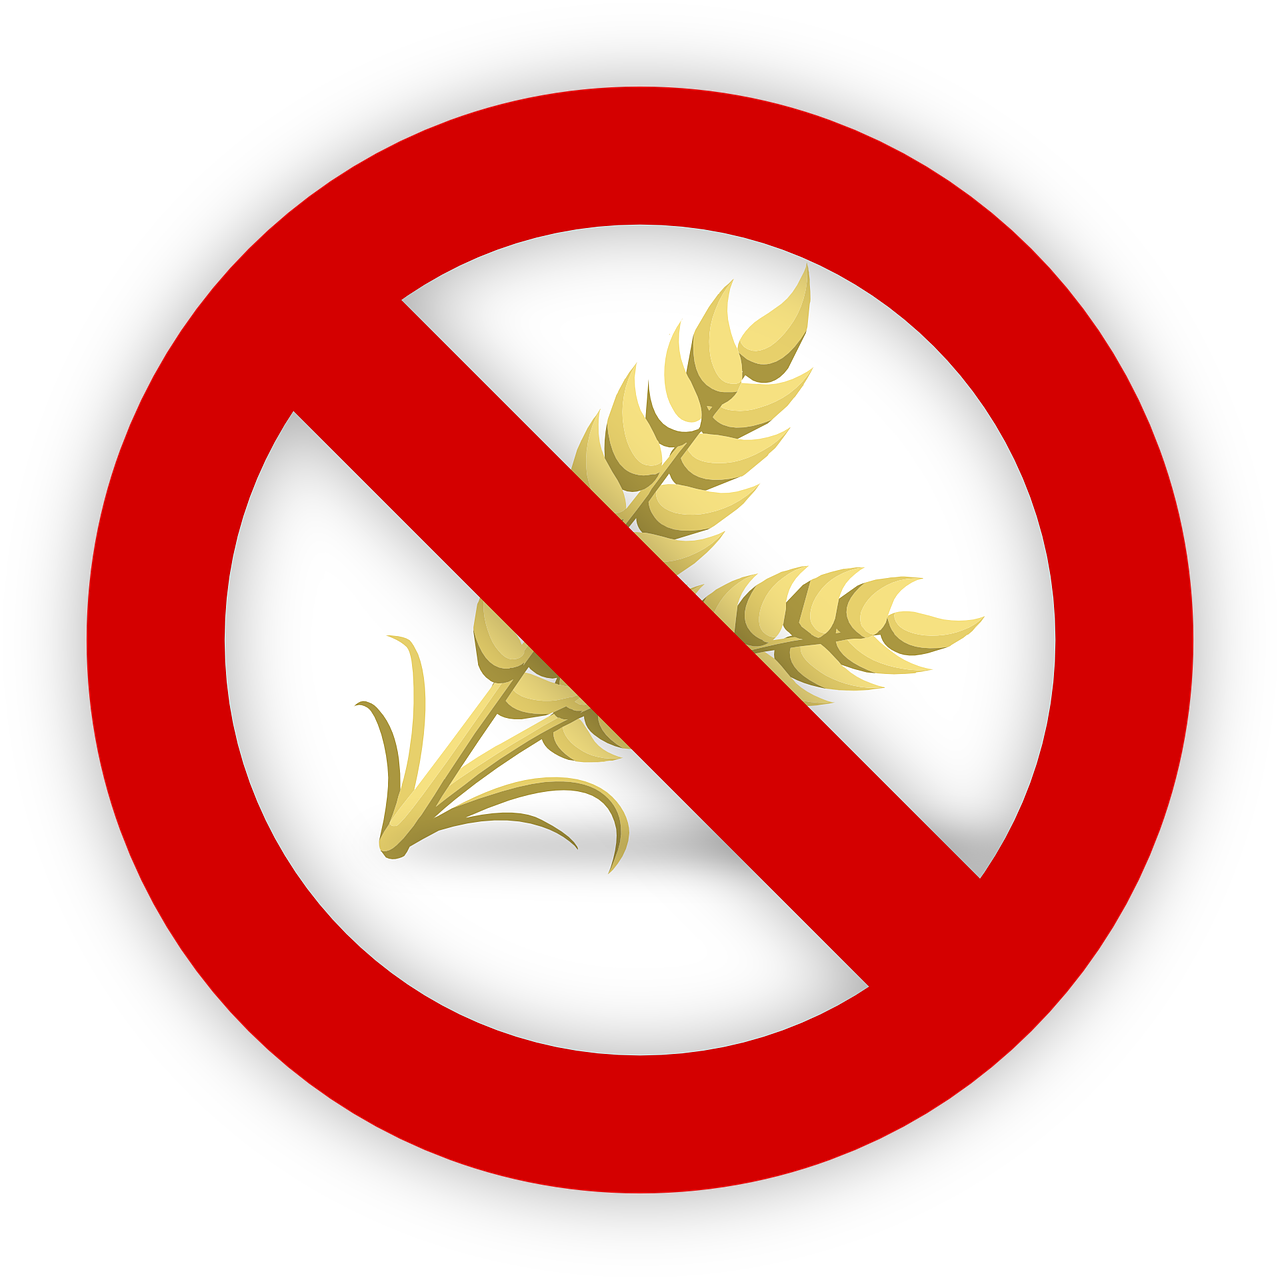 Free wheat gluten allergy vector